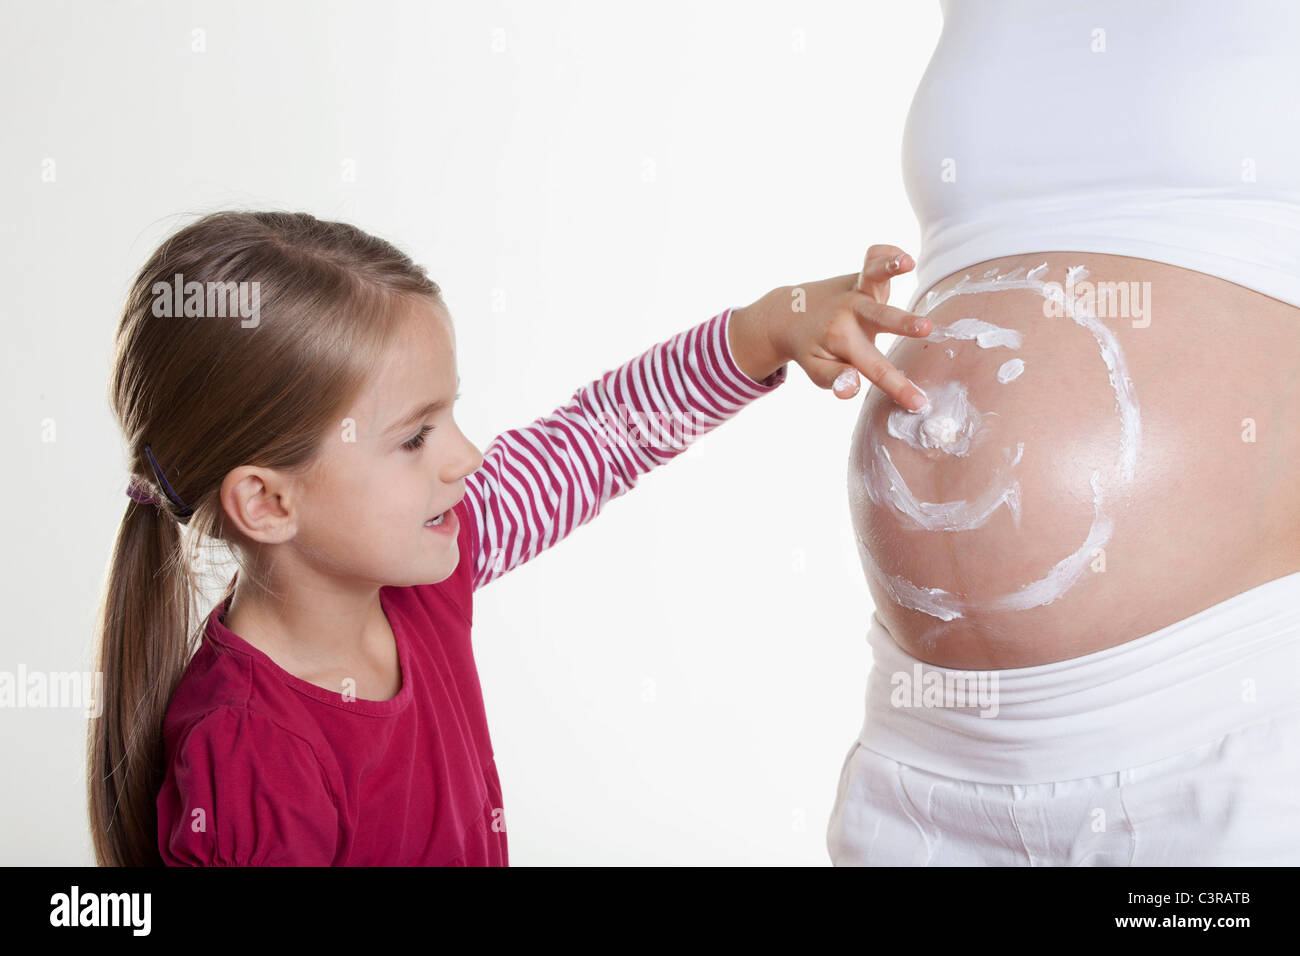 Zeichnung von Smiley-Gesicht auf Bauch der schwangeren Mutter Tochter Stockfoto